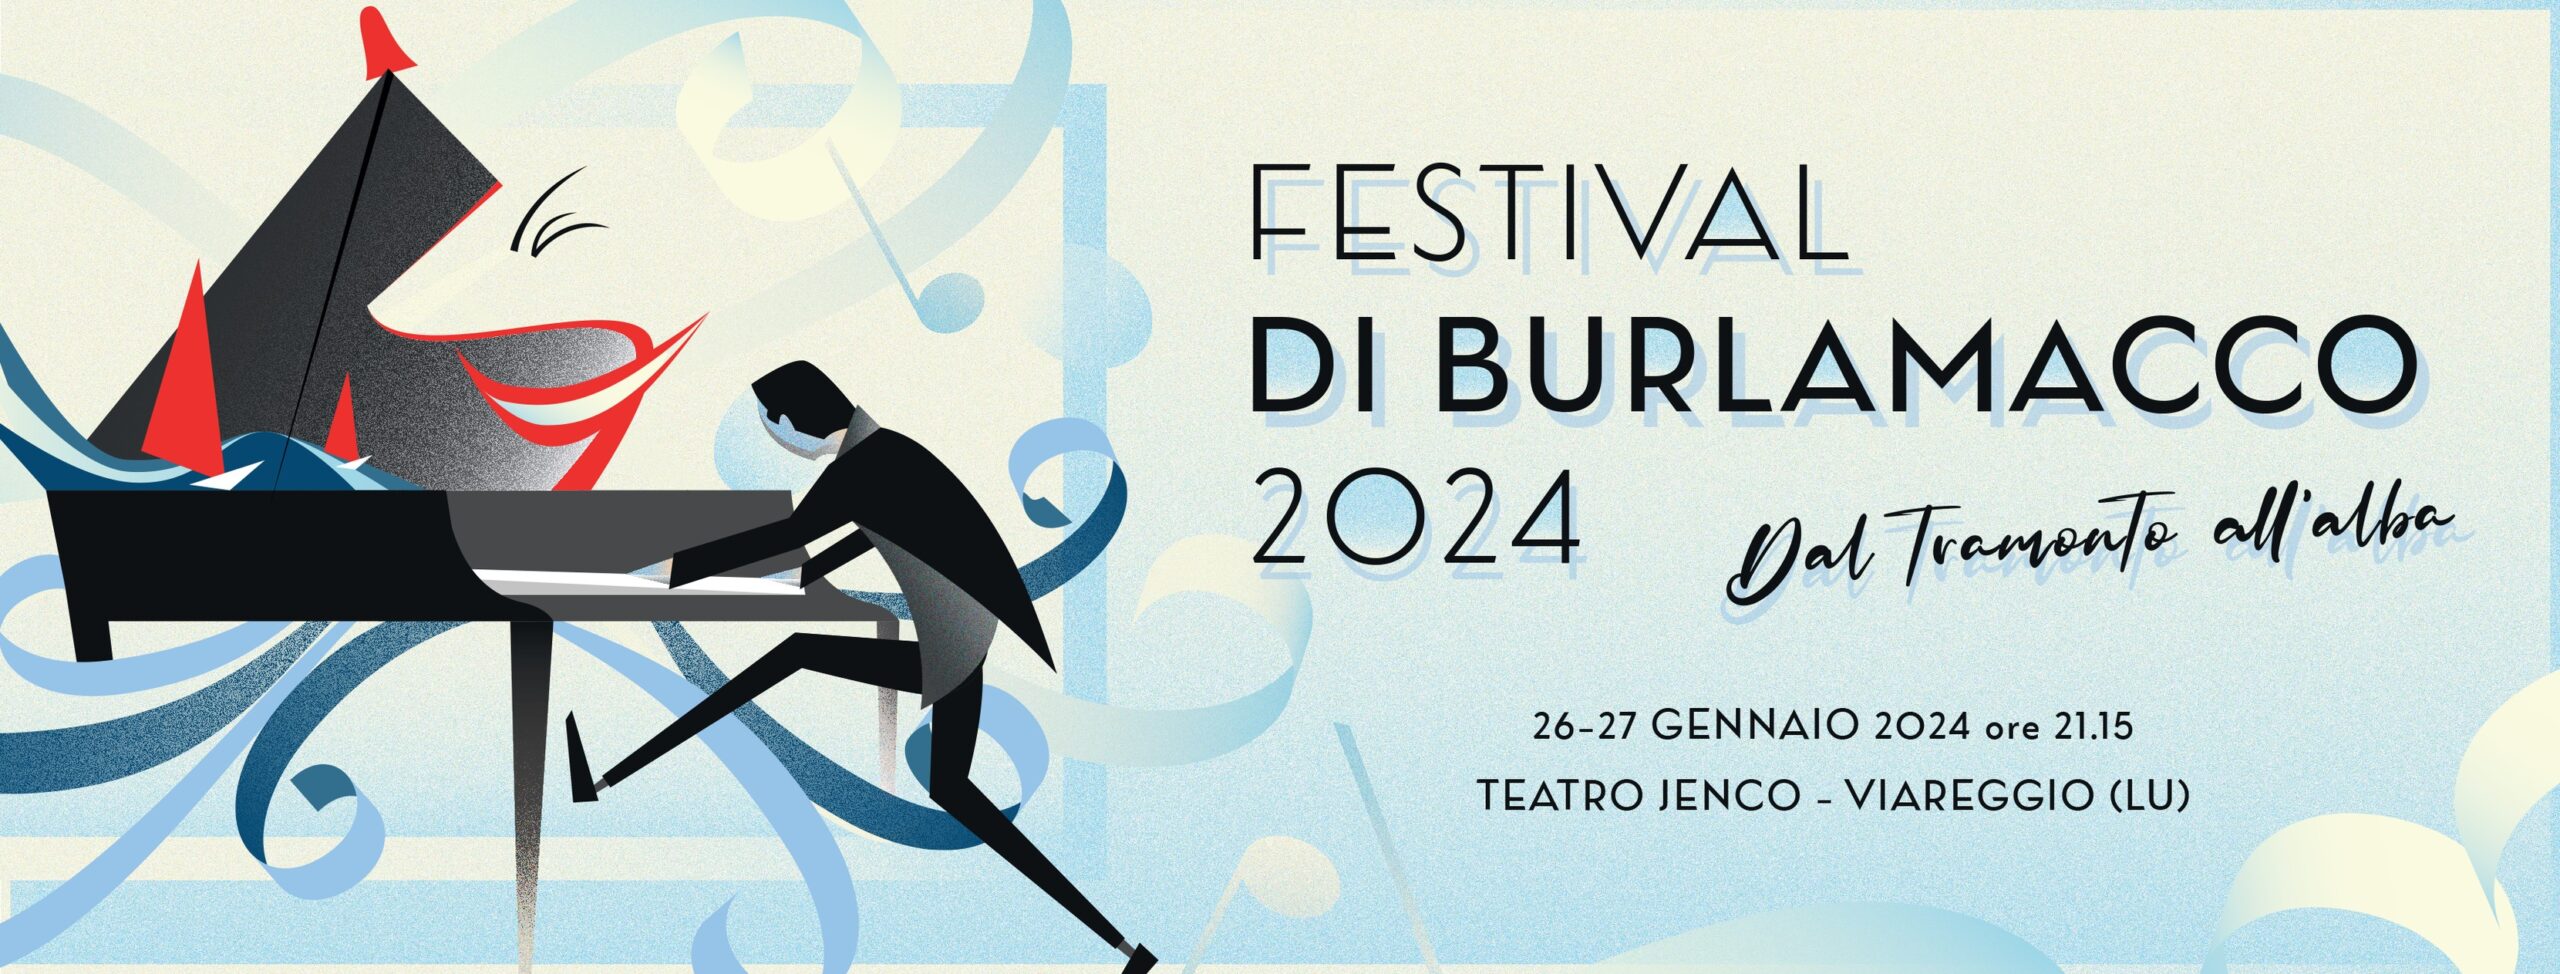 Le canzoni del Festival di Burlamacco 2024